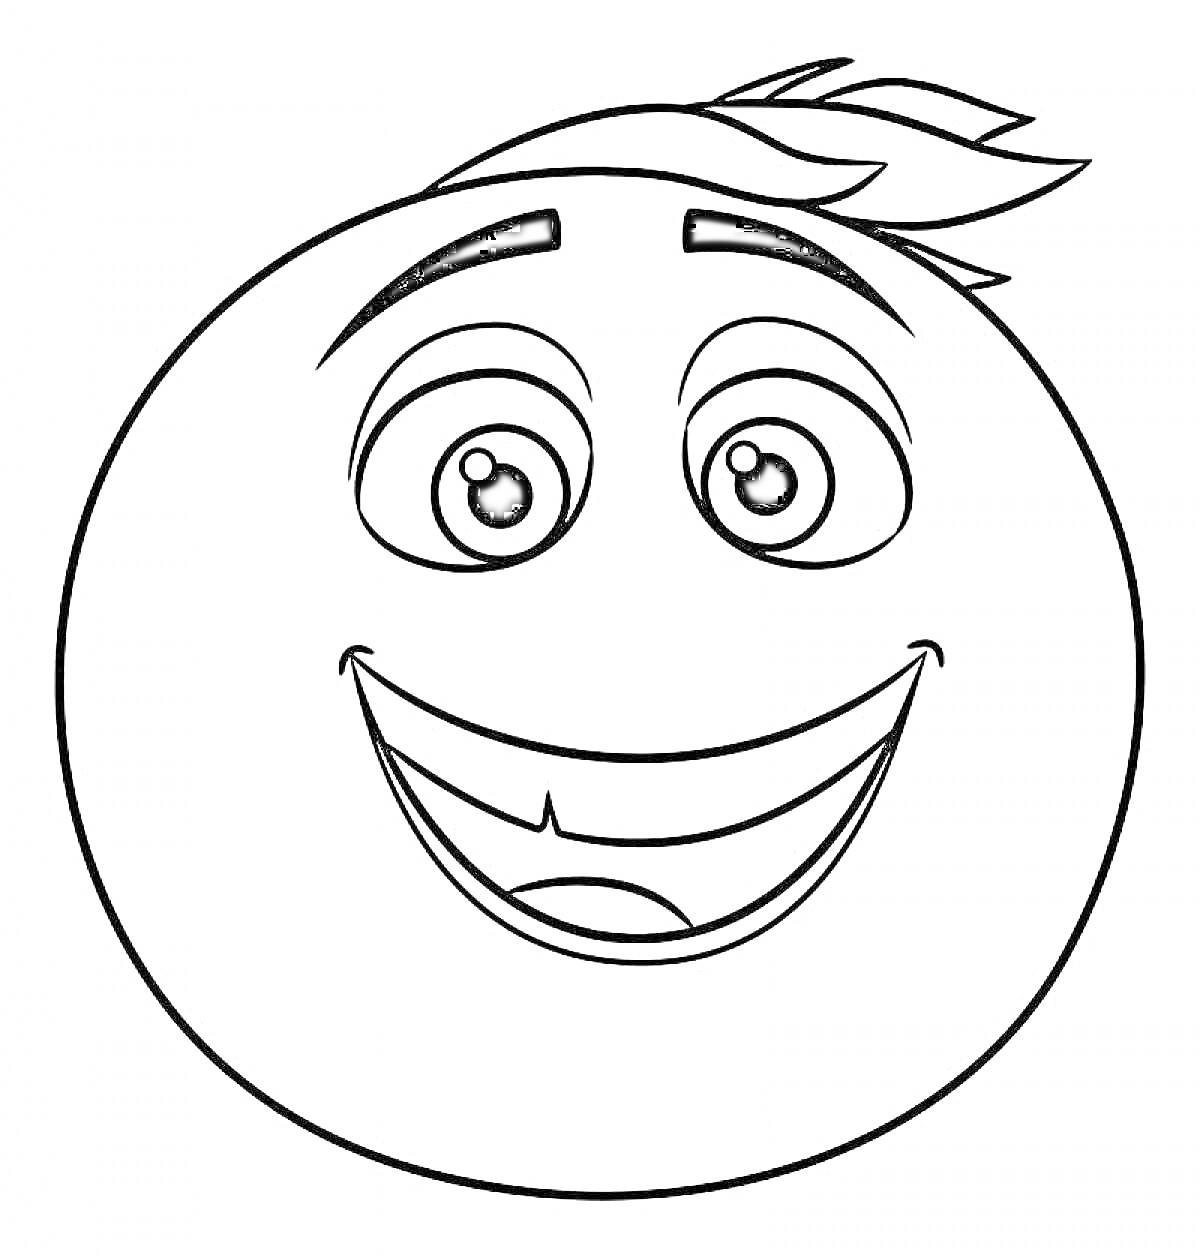 Раскраска Смайлик с улыбкой и хохолком. На картинке изображен круглый смайлик с широким улыбчивым ртом, двумя большими глазами и небольшим хохолком на голове.